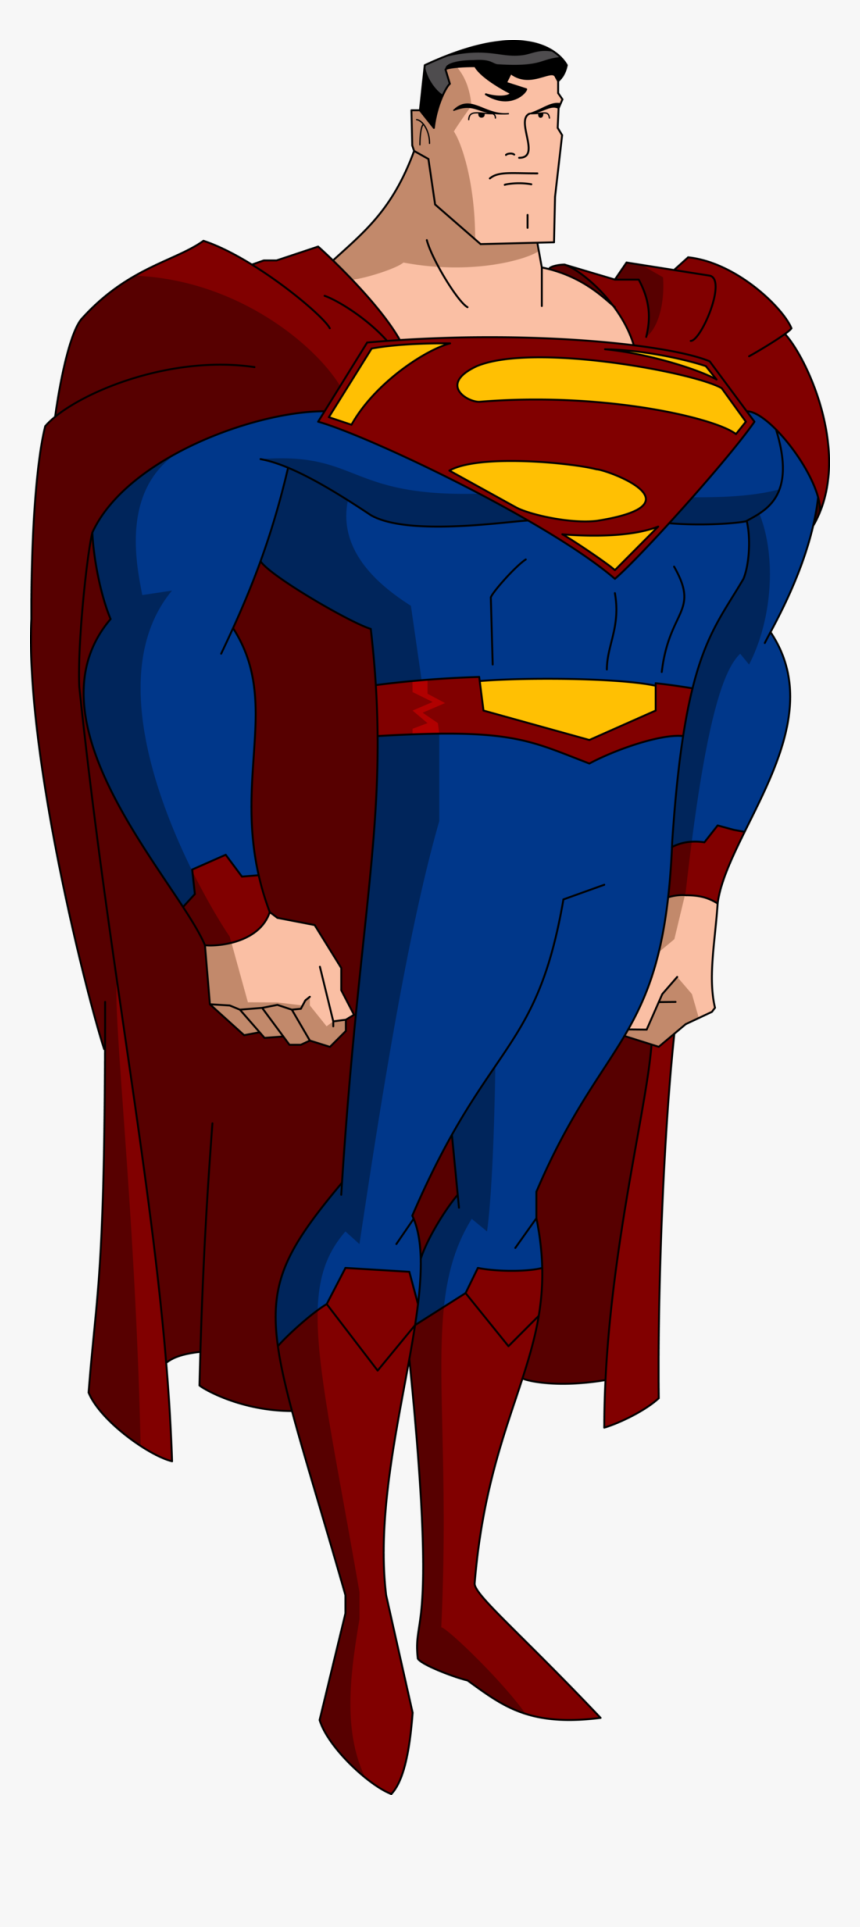 Justice League Cartoon Superman - Image - Superman Justice League War